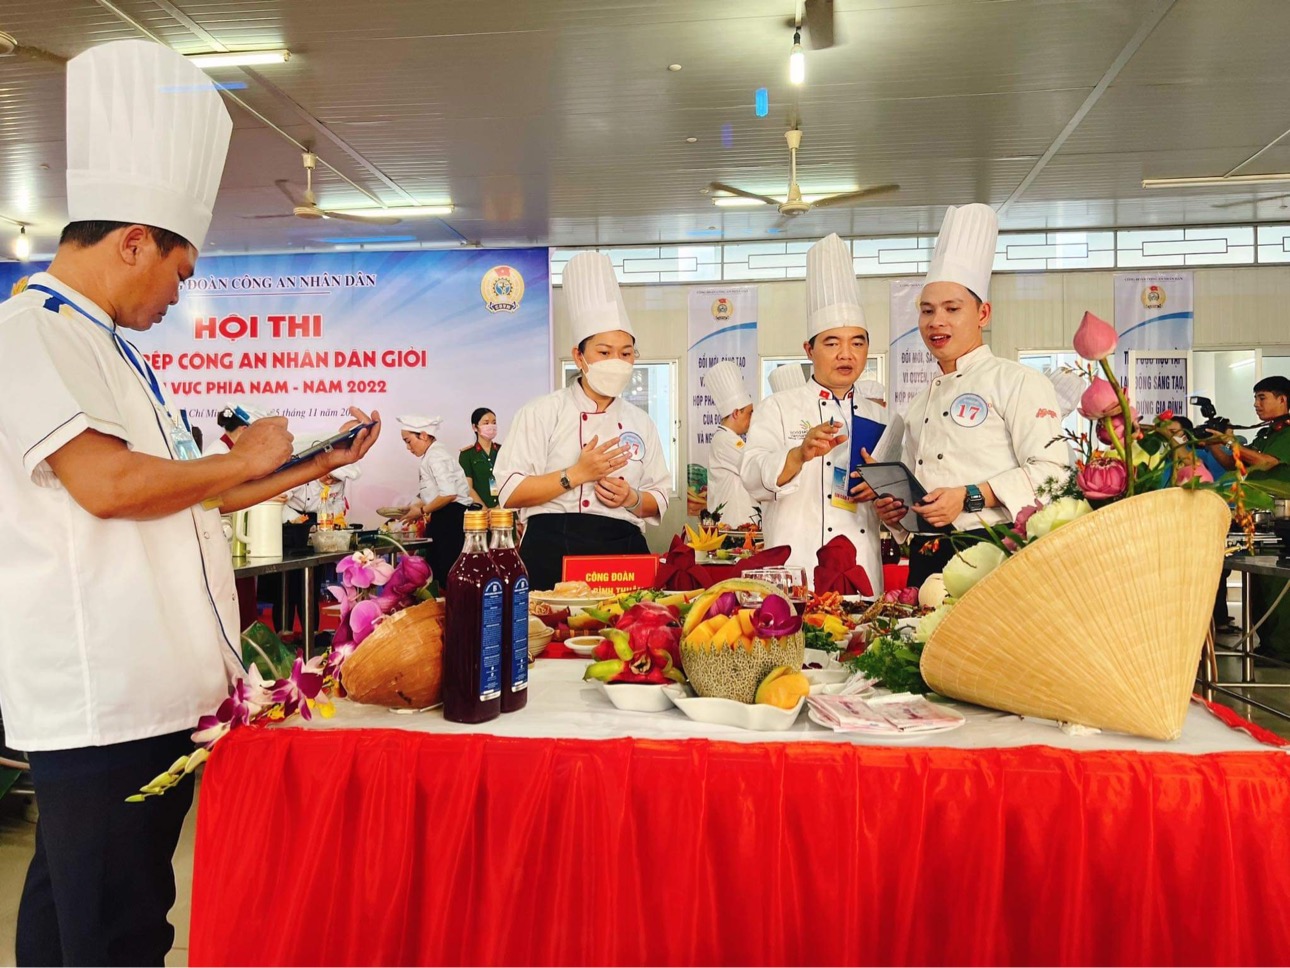 Ban giám khảo chấm điểm các món ăn của Công đoàn Công an Bình Thuận. Ảnh: PP